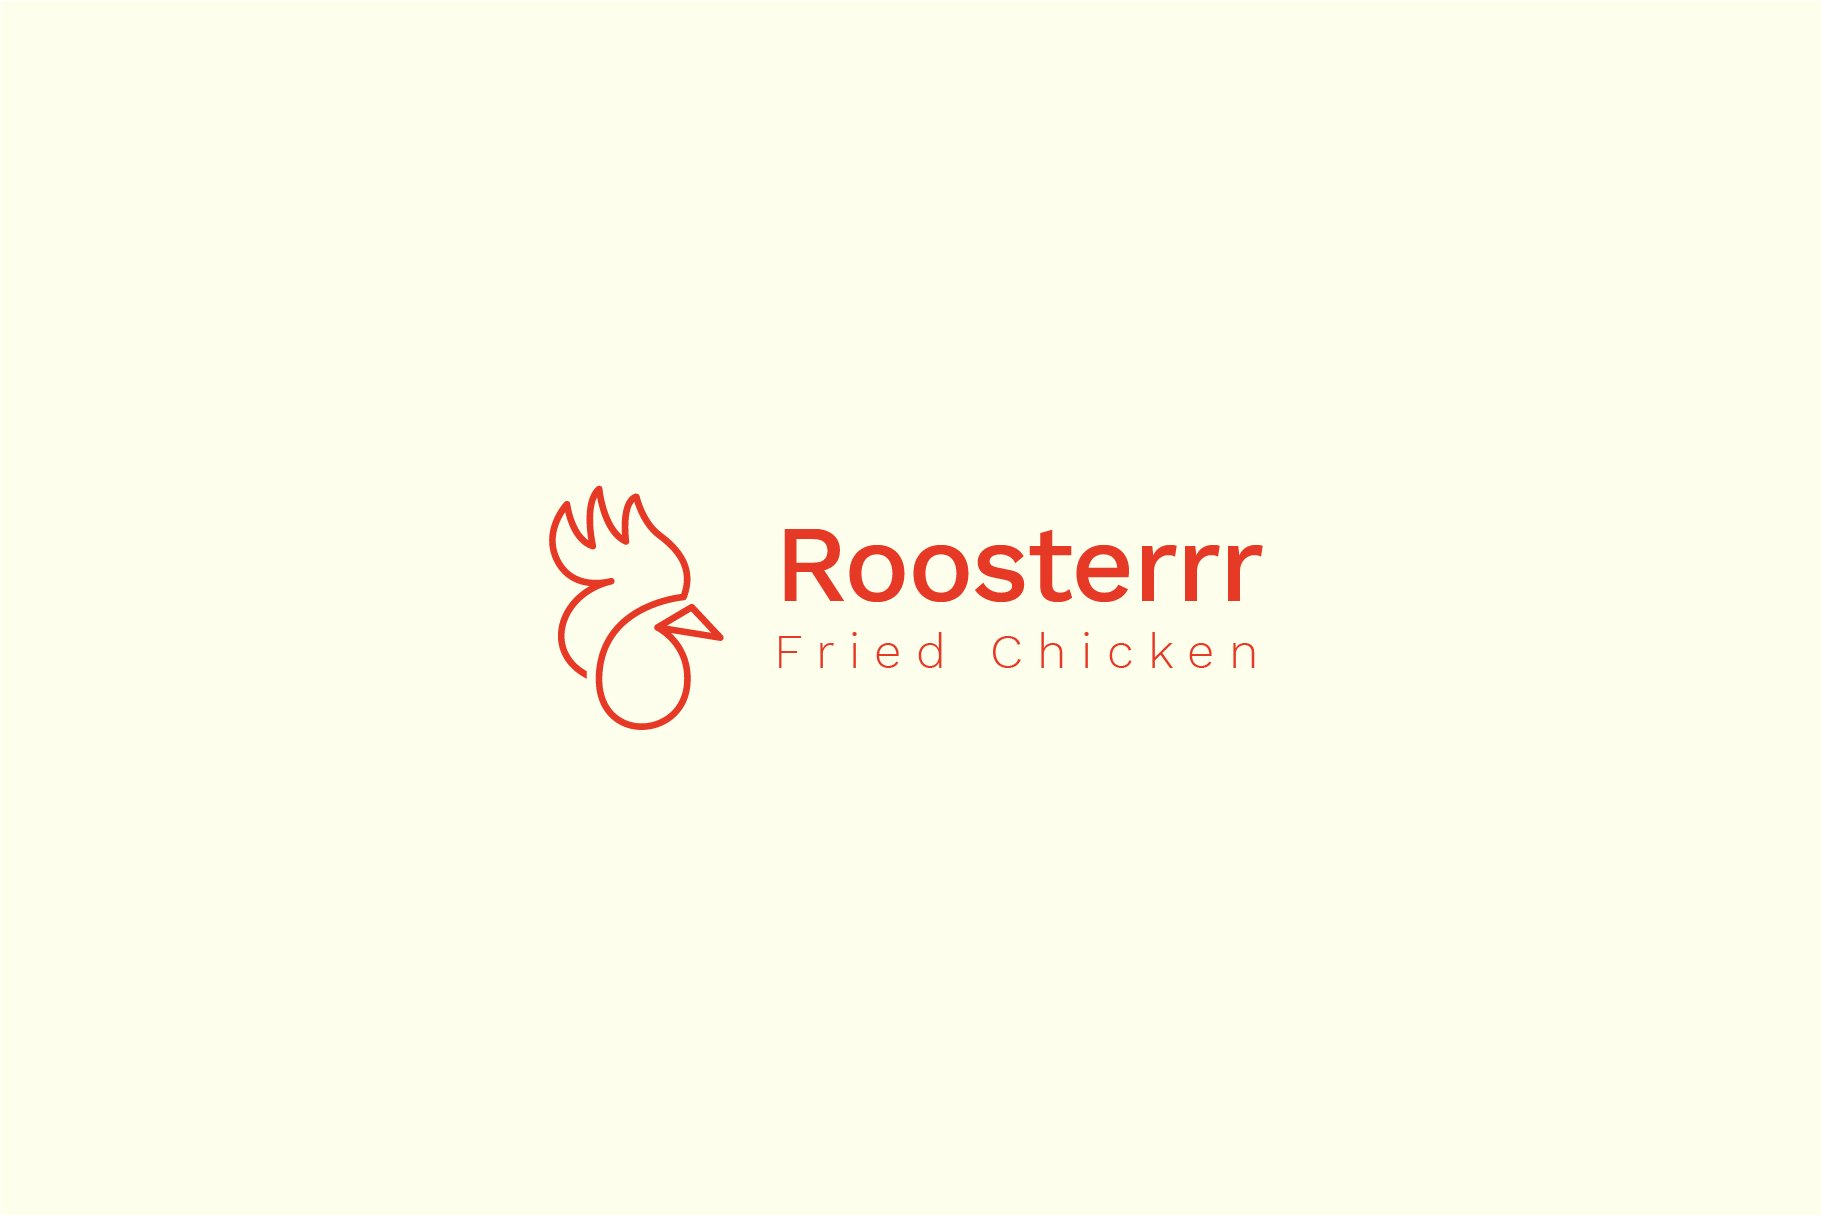 roosterrr logo artboard 5 965